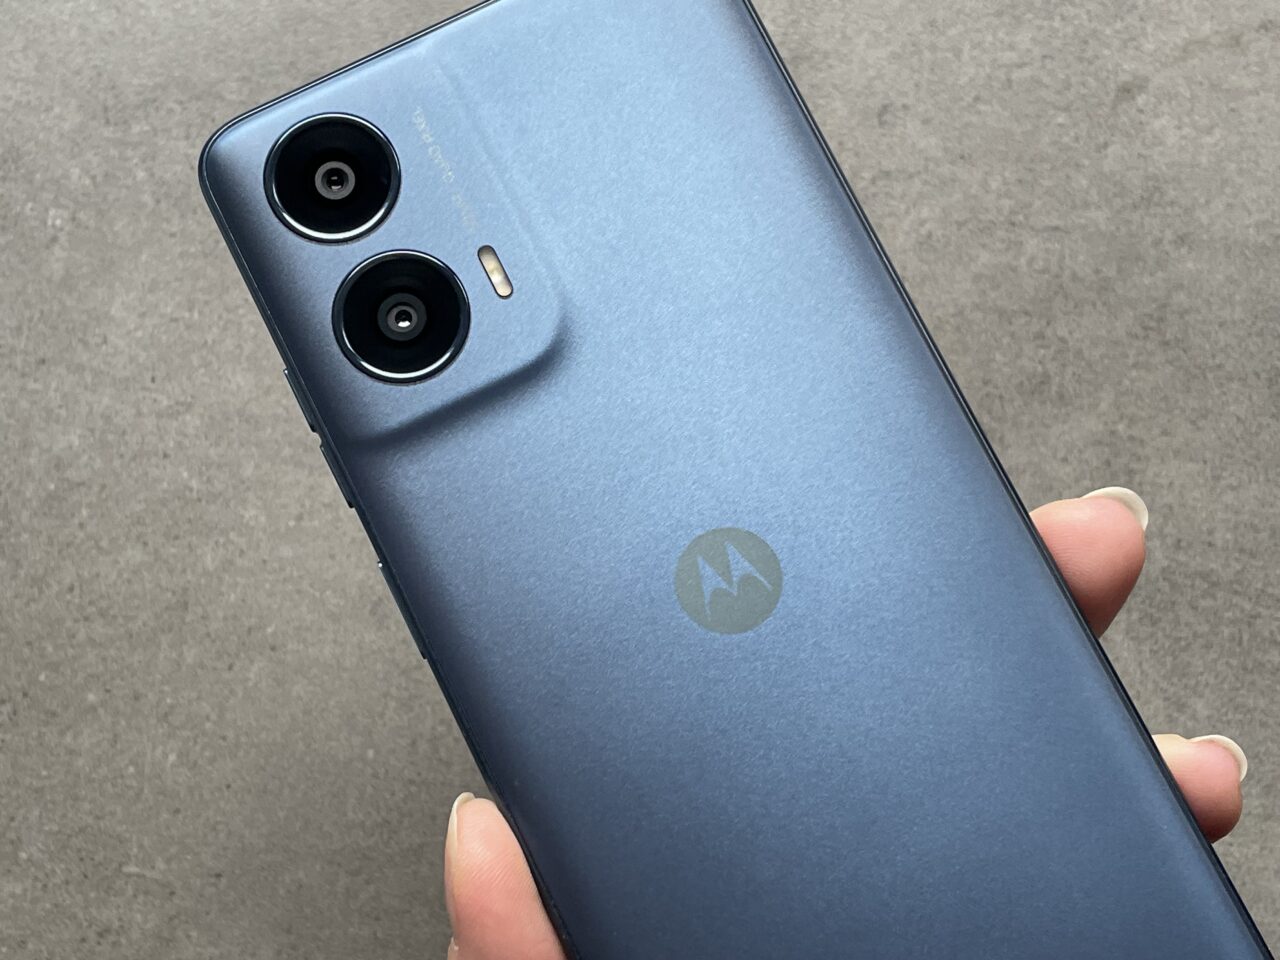 Tylna część smartfona marki Motorola w kolorze niebieskim, z podwójnym aparatem i logo producenta, trzymana w dłoni.